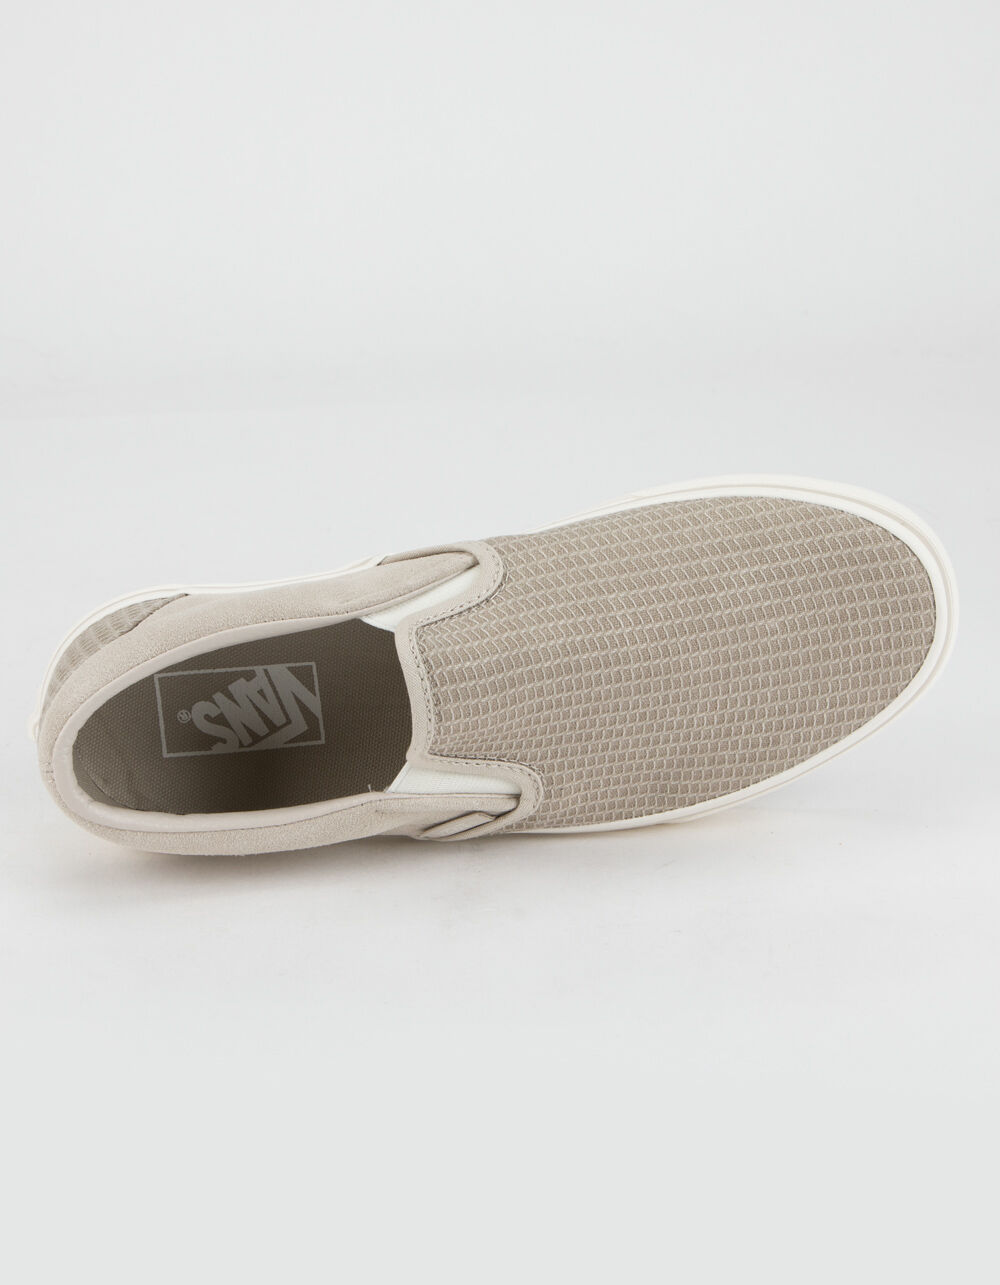 VANS Classic Slip-On Womens Woven Shoes - WHITE COMBO | Tillys